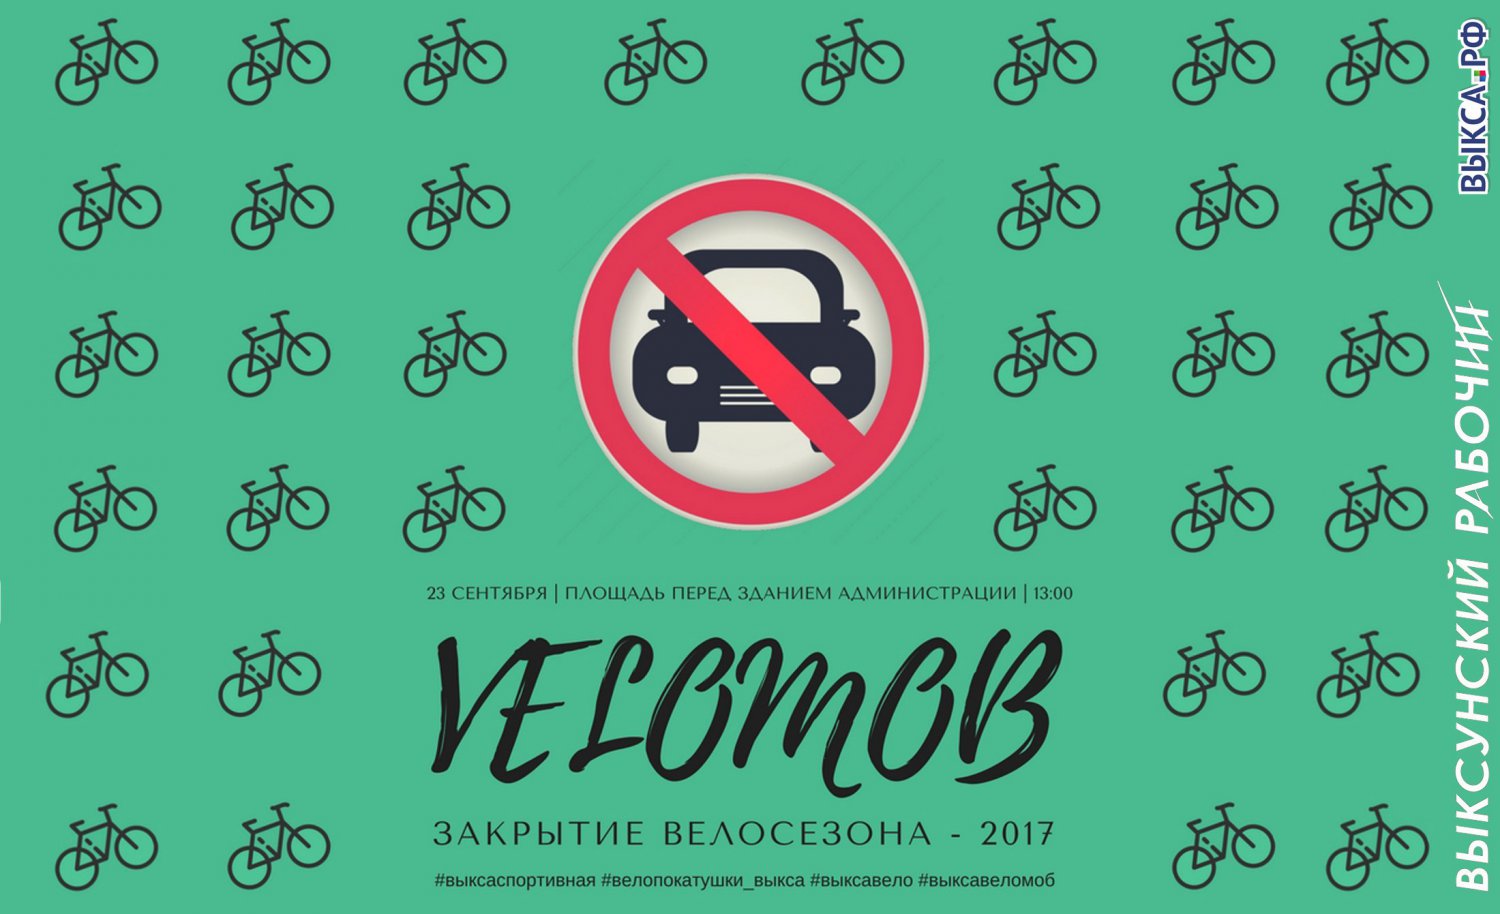 Закрытие велосезона — 2017